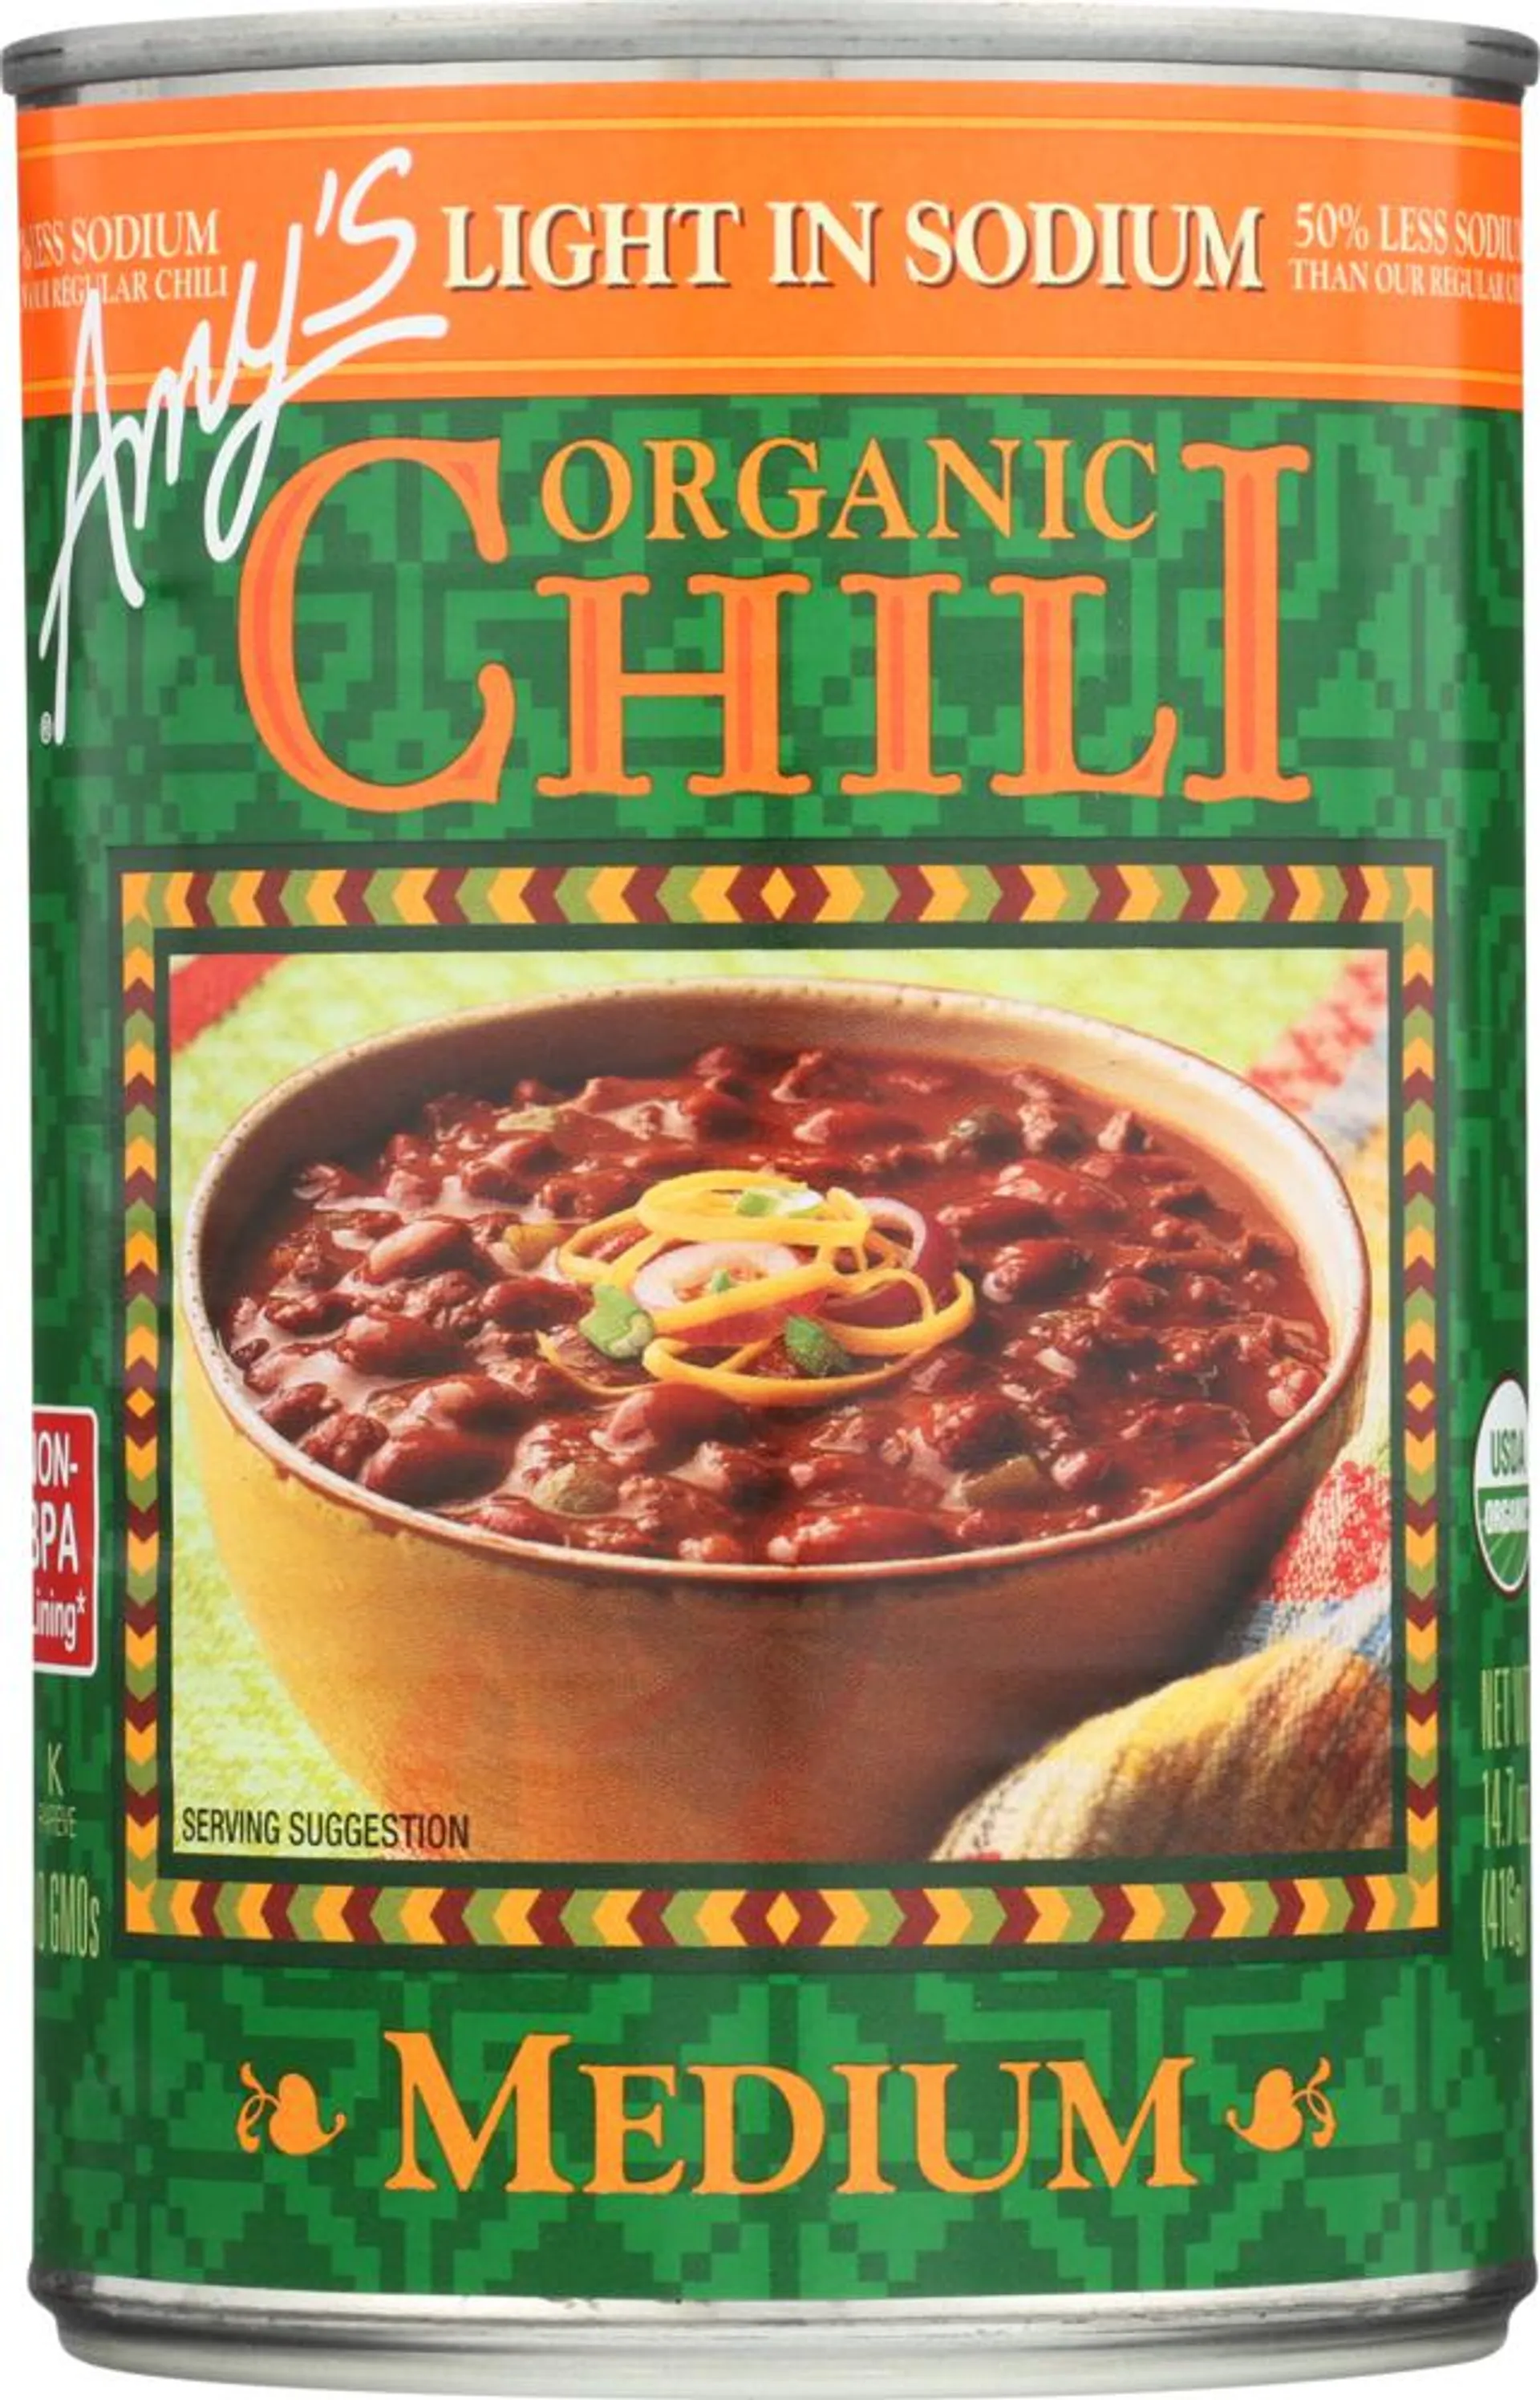 Organic Chili Medium (Low Sodium)